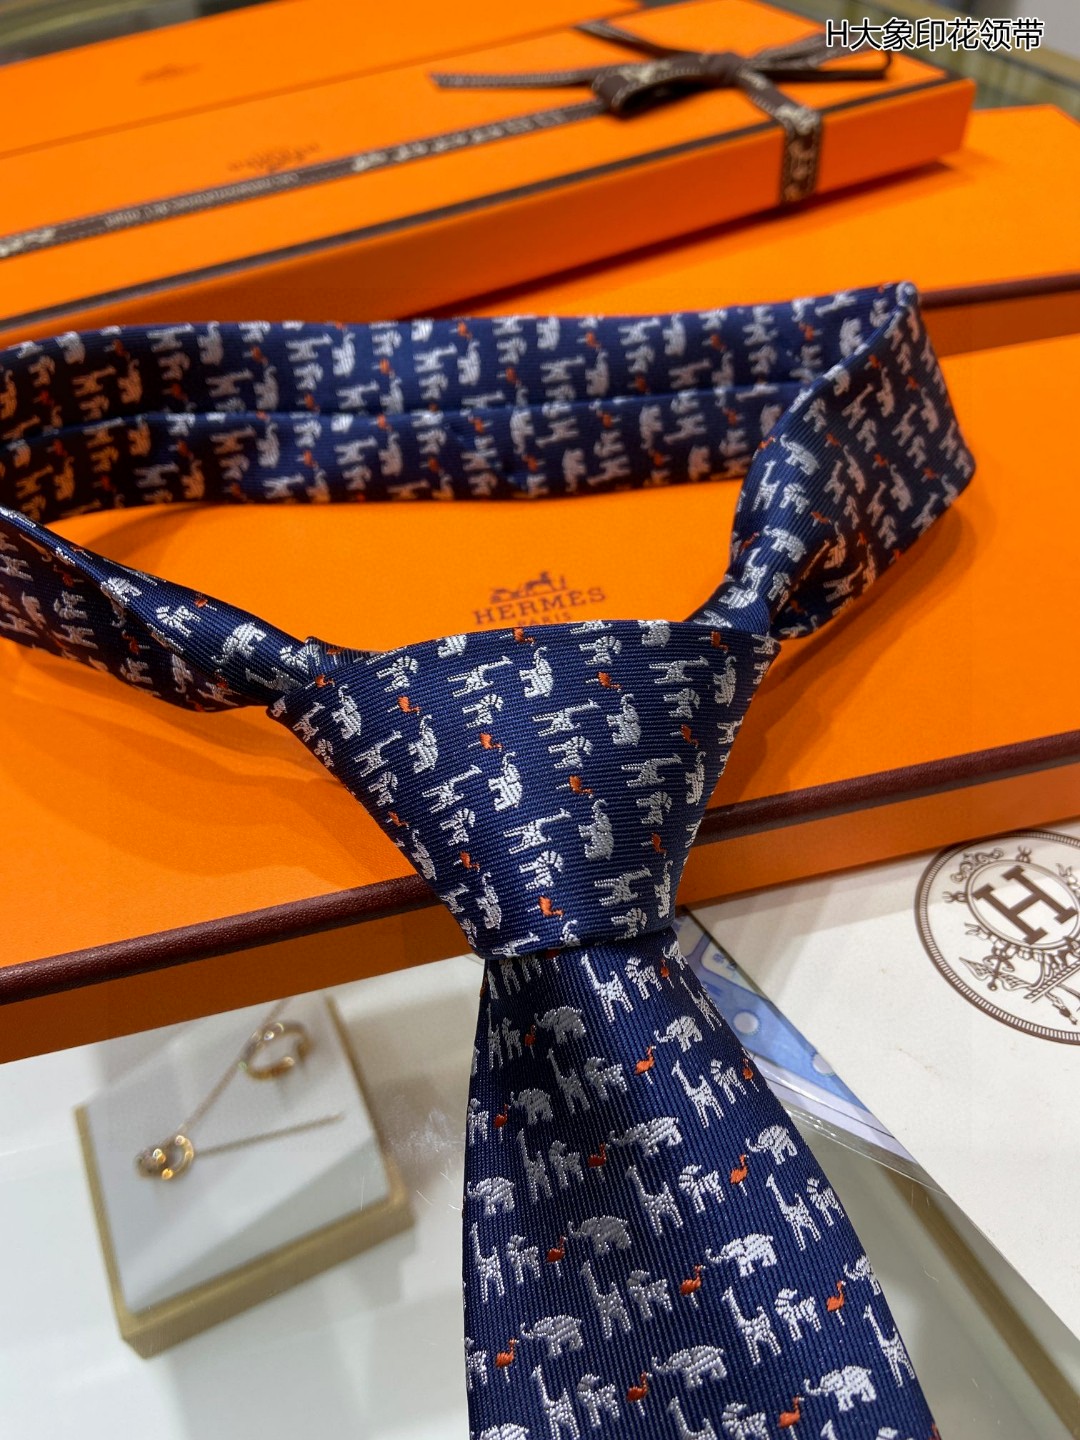 男士新款领带系列H大象印花领带稀有H